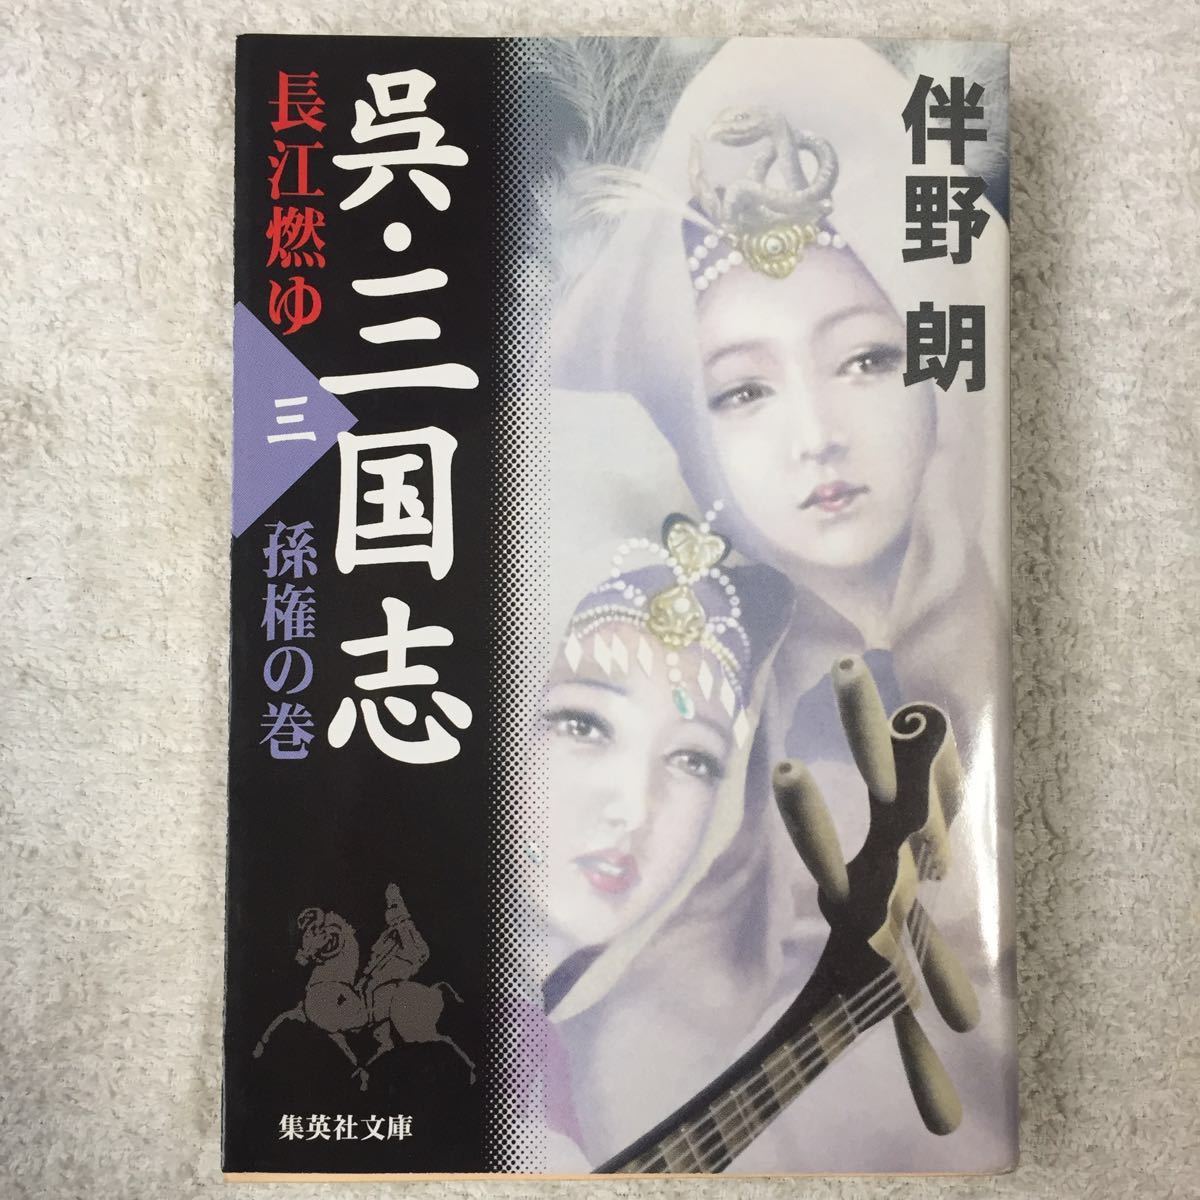 Kure / Sangokushi nagae nagae 3 тома Son Gon (Shueisha Bunko) Ryo Banno 9784087475555